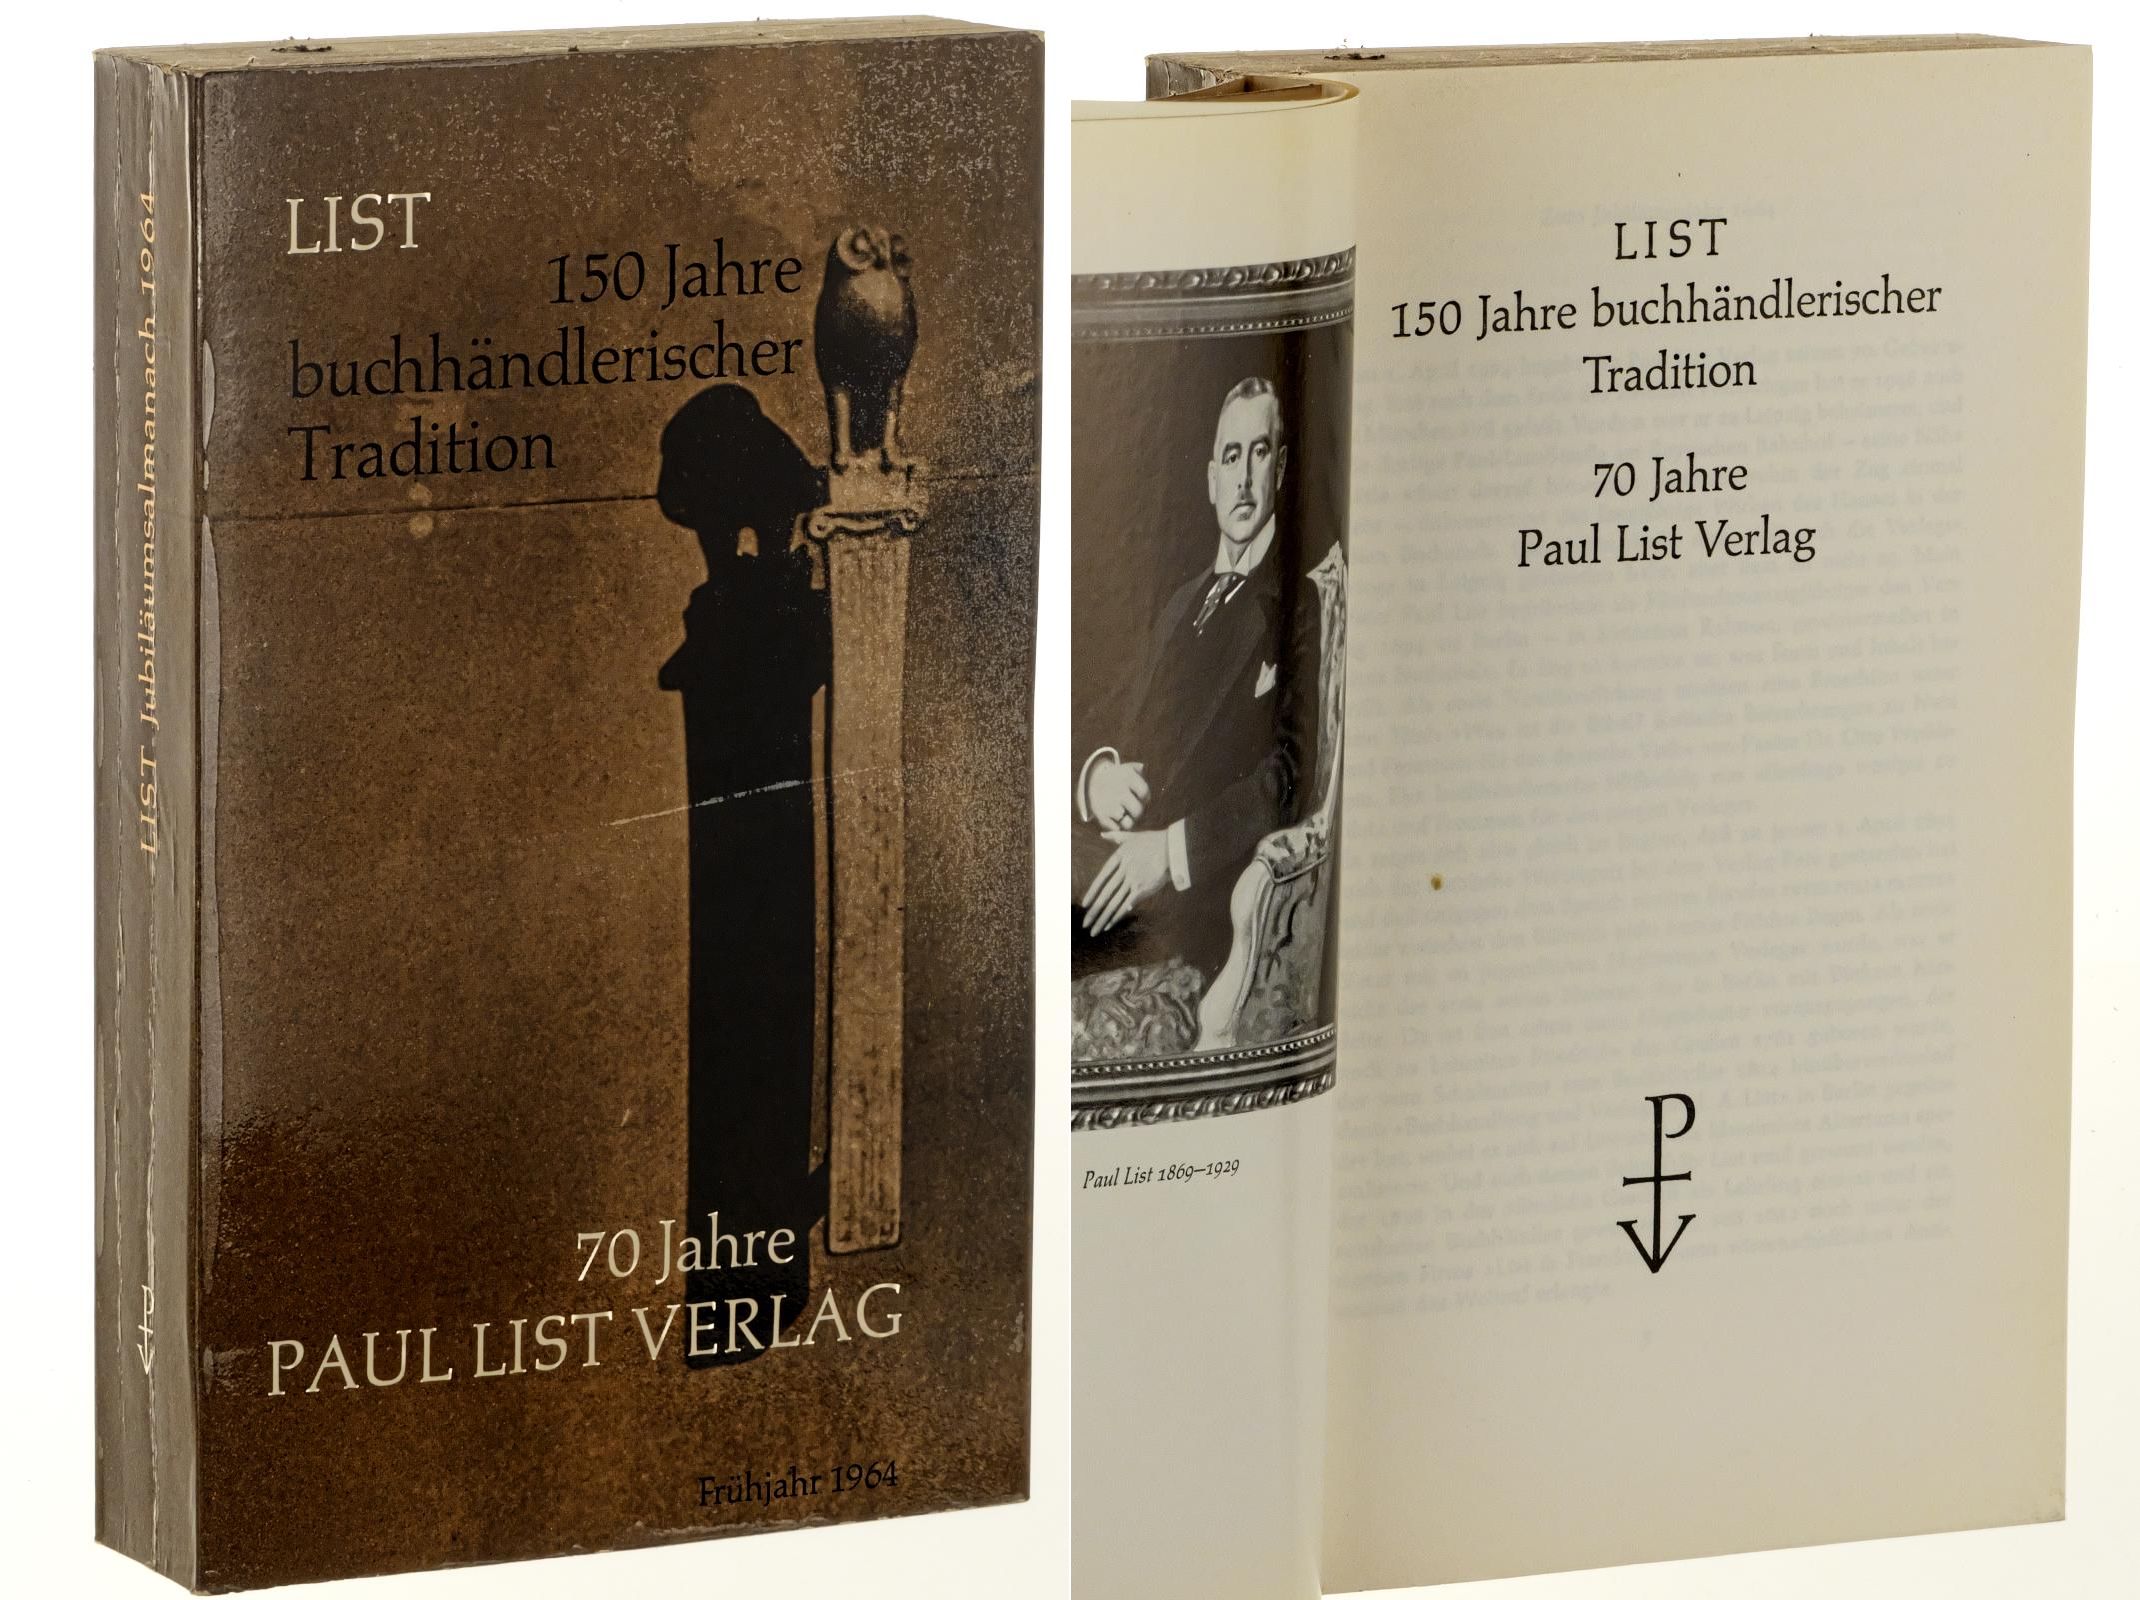   List. 150 Jahre buchhändlerischer Tradition. 70 Jahre Paul List Verlag. 